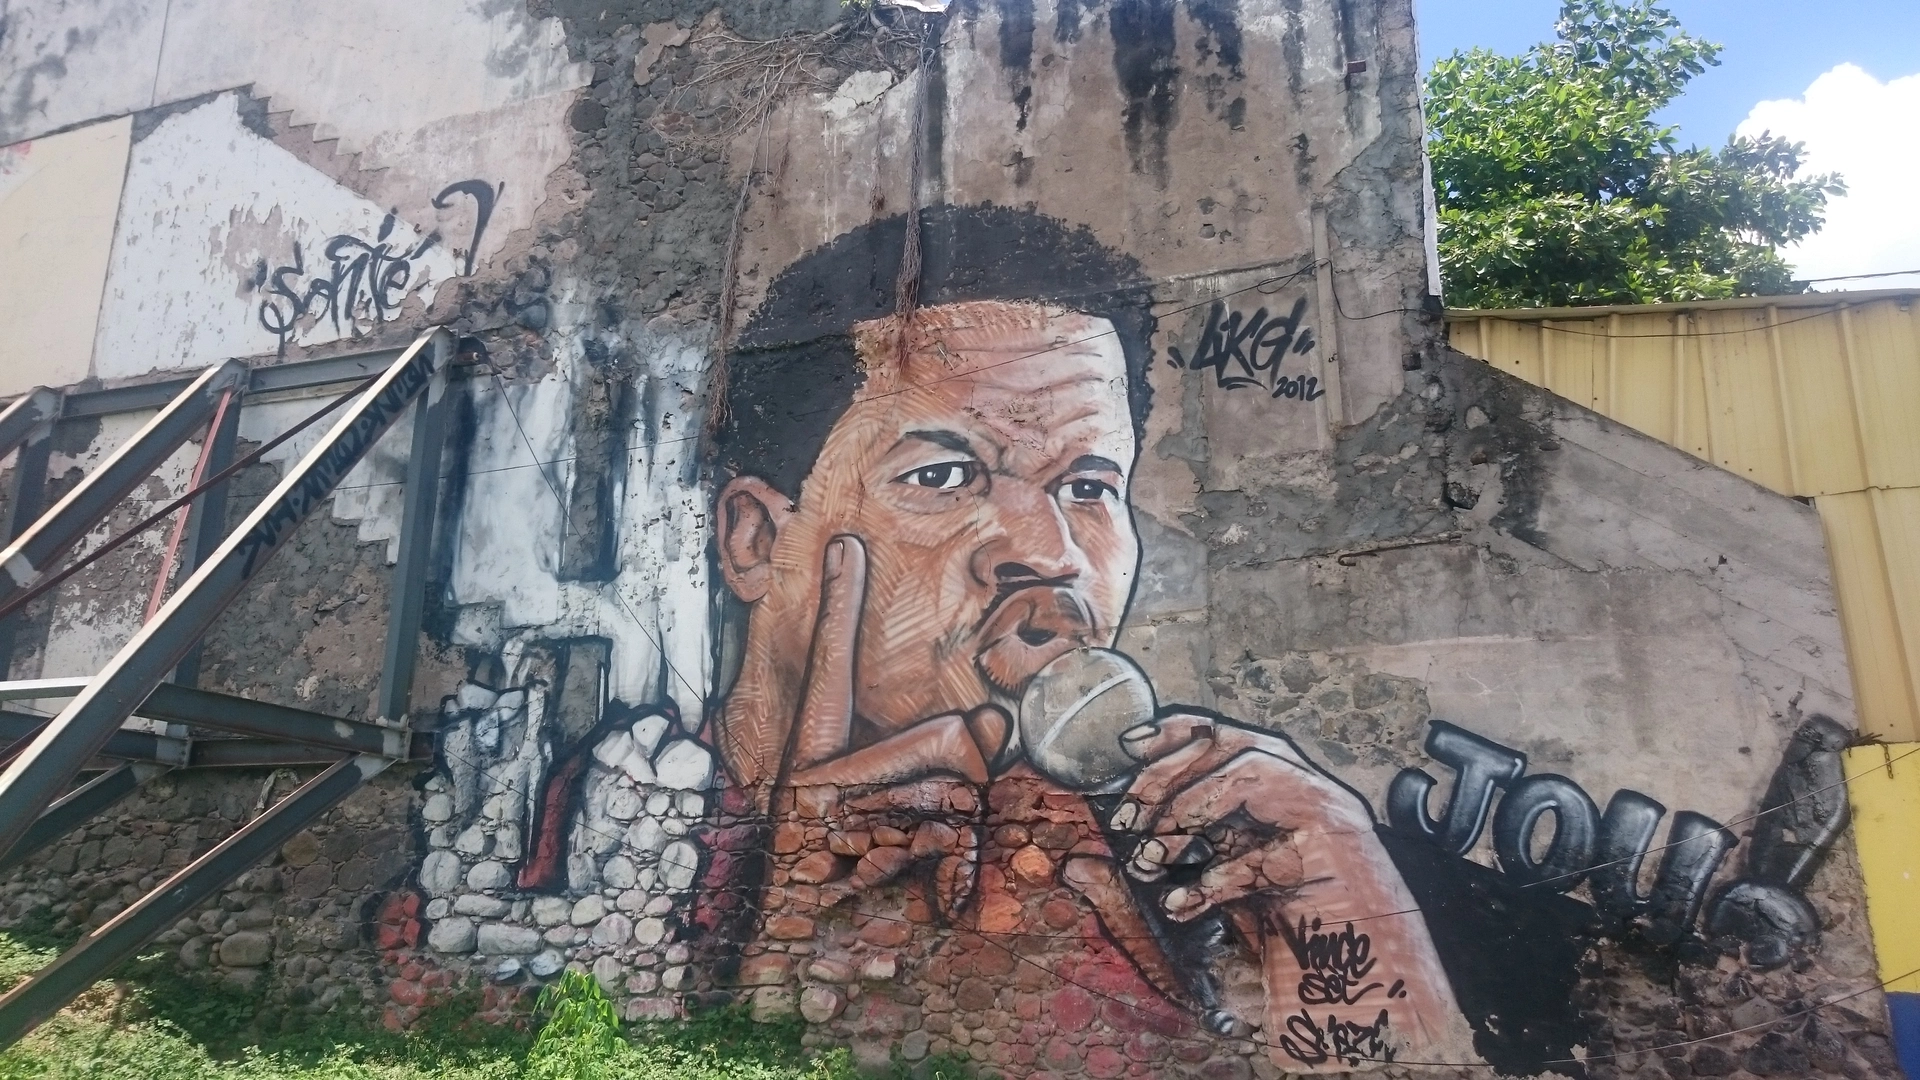 Oeuvre de Street Art réalisée par 4KG à Basse-Terre